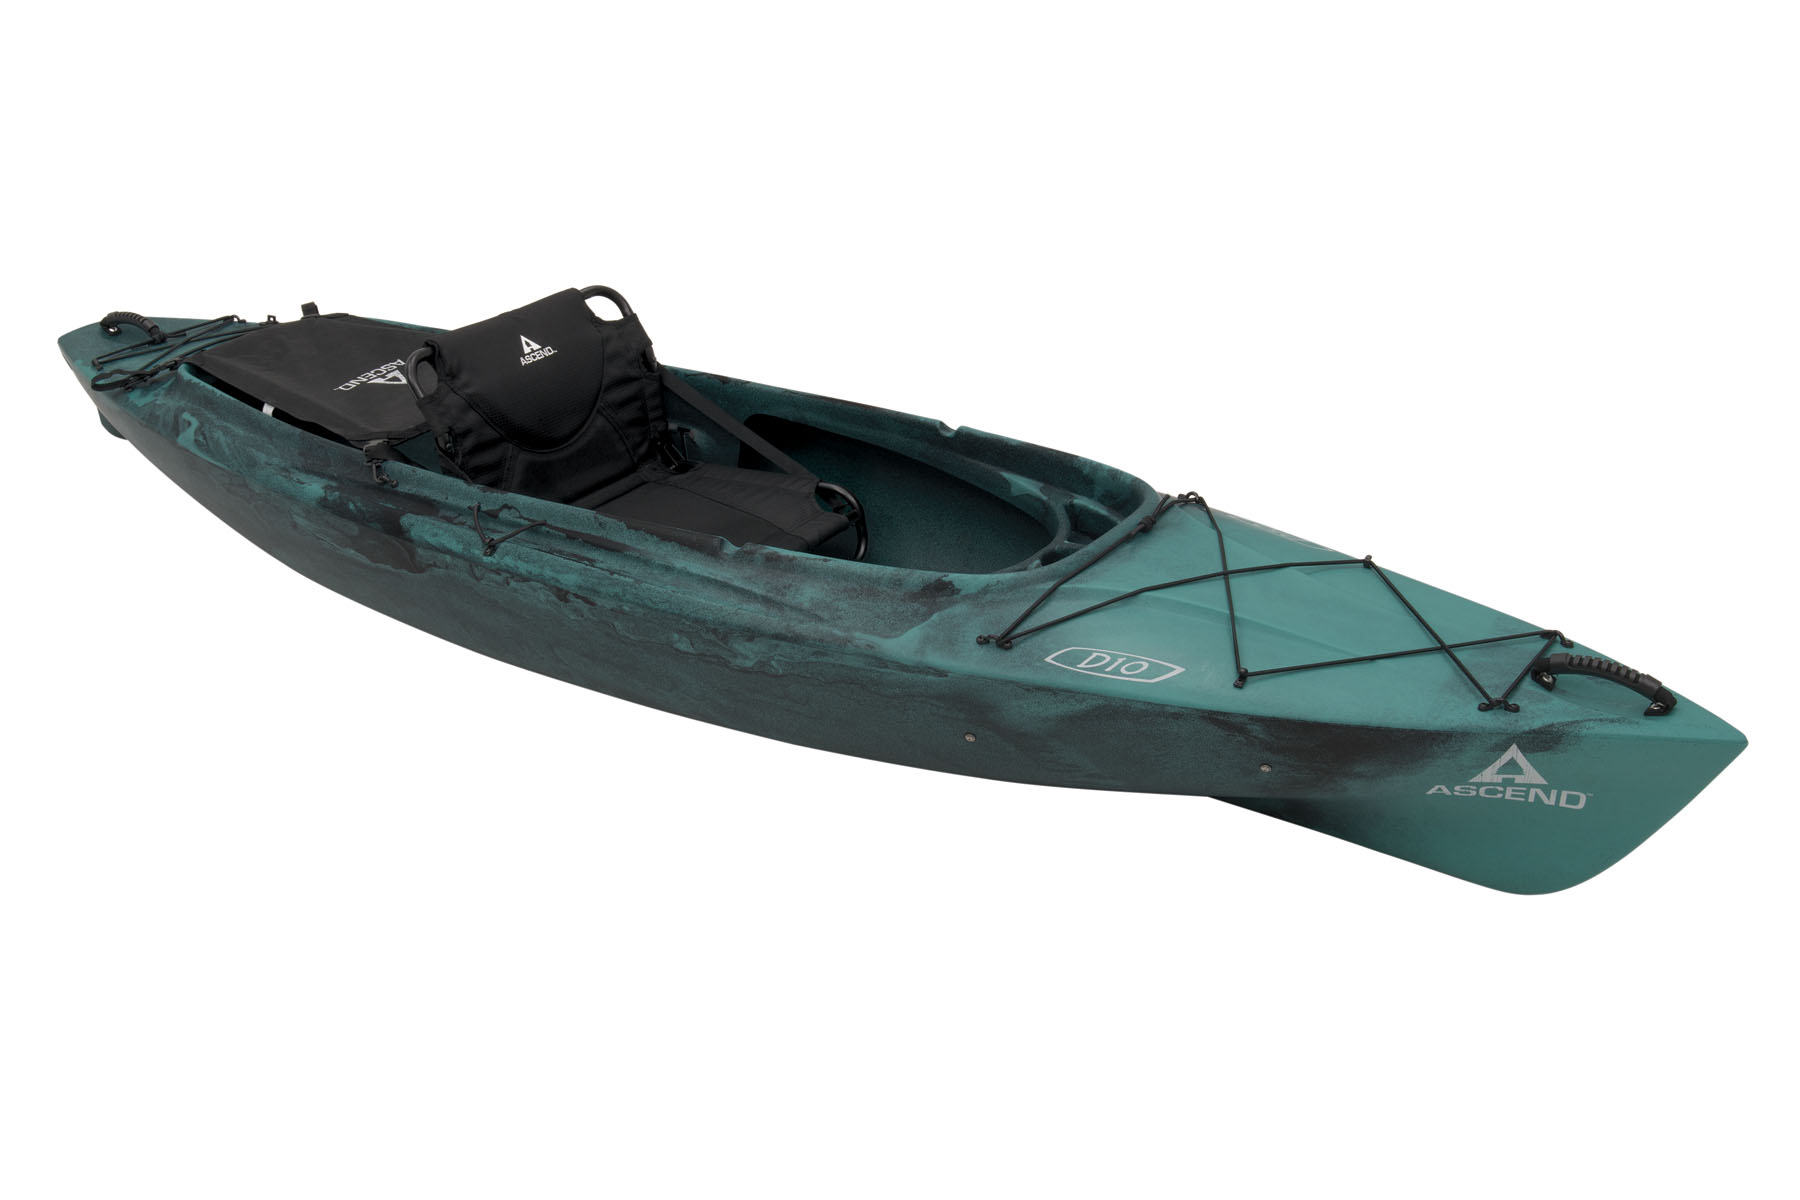 2022 Hobie i Trek 11 Kayak - boats - by owner - marine sale - craigslist